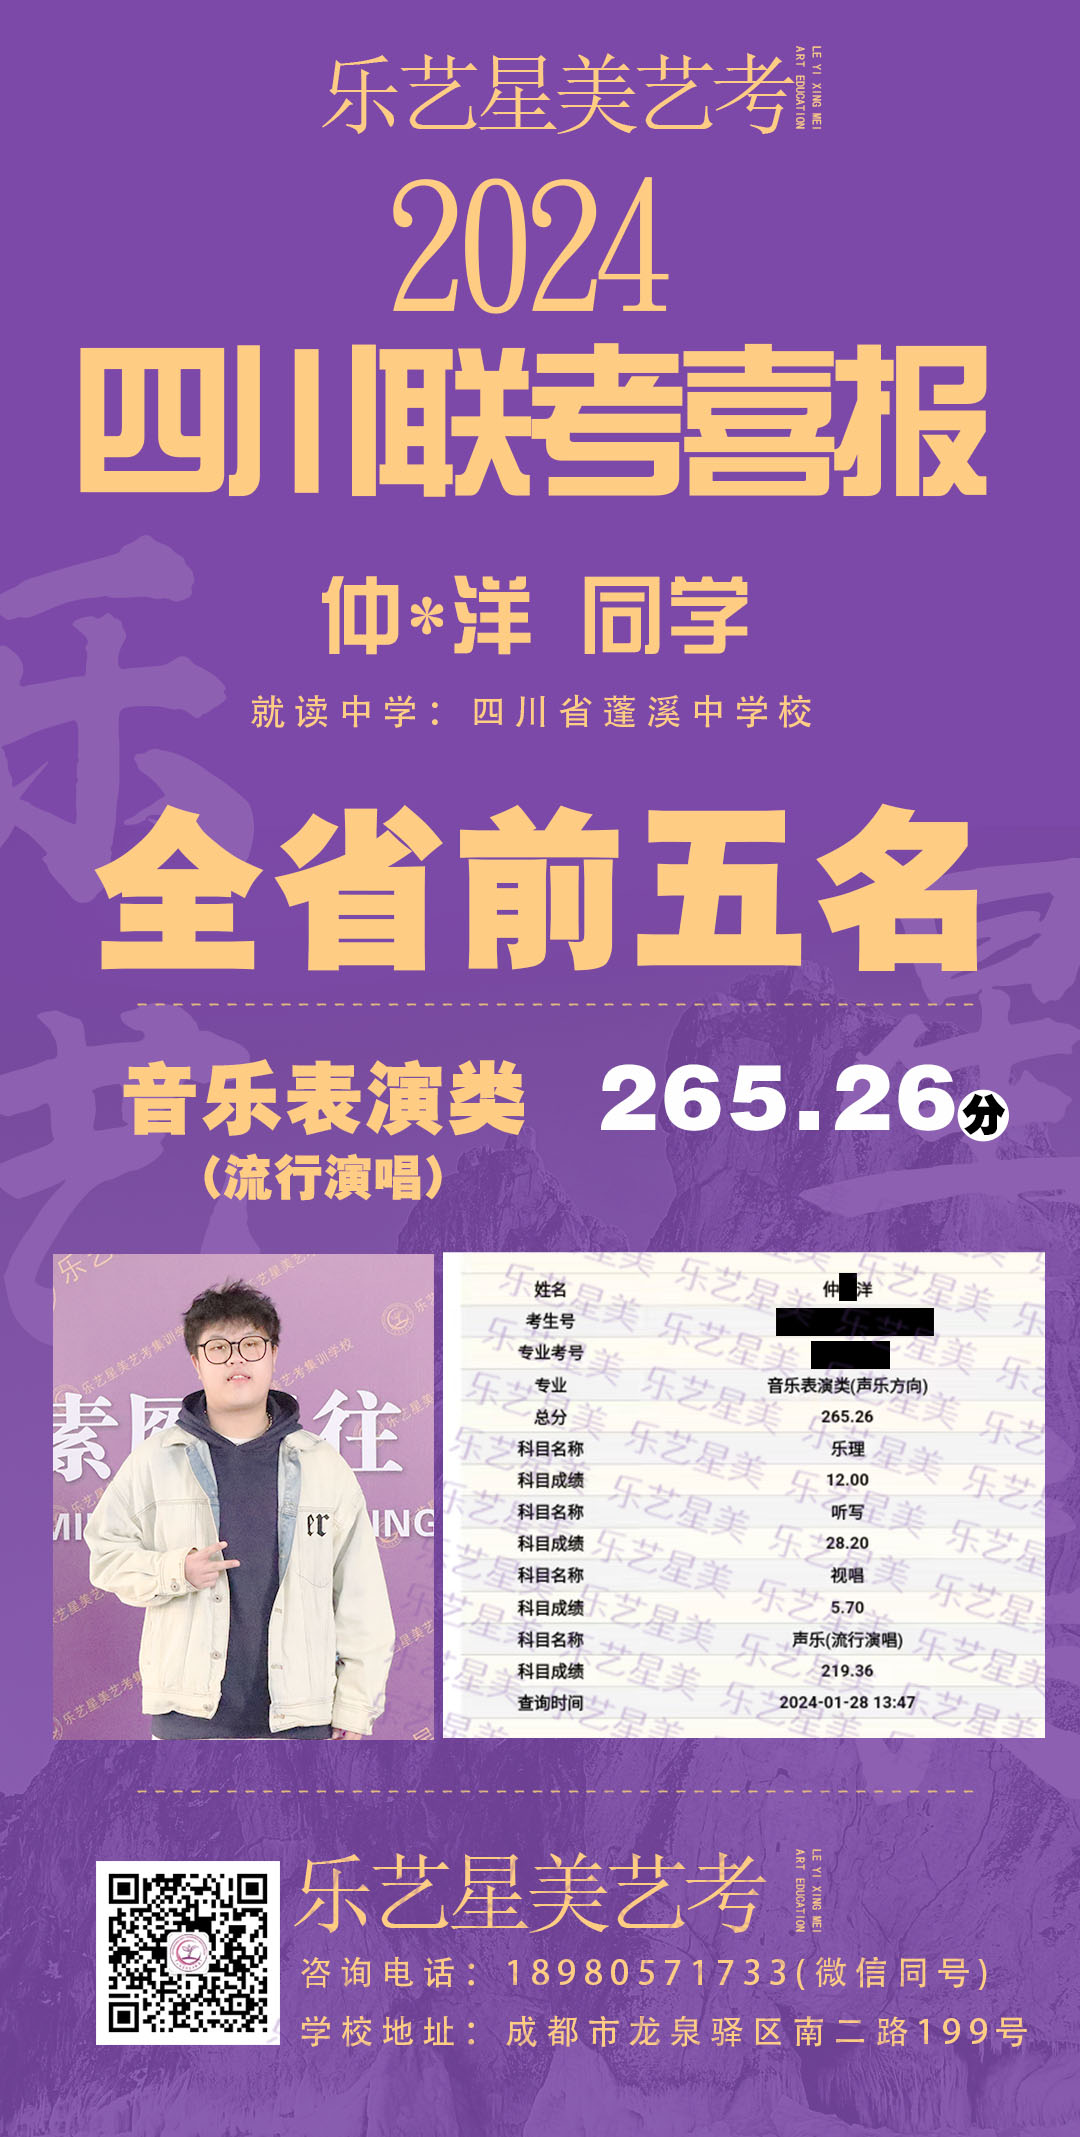 来自四川省蓬溪中学的仲明洋同学音乐表演（流行演唱） 265.26分，斩获全省前五名！